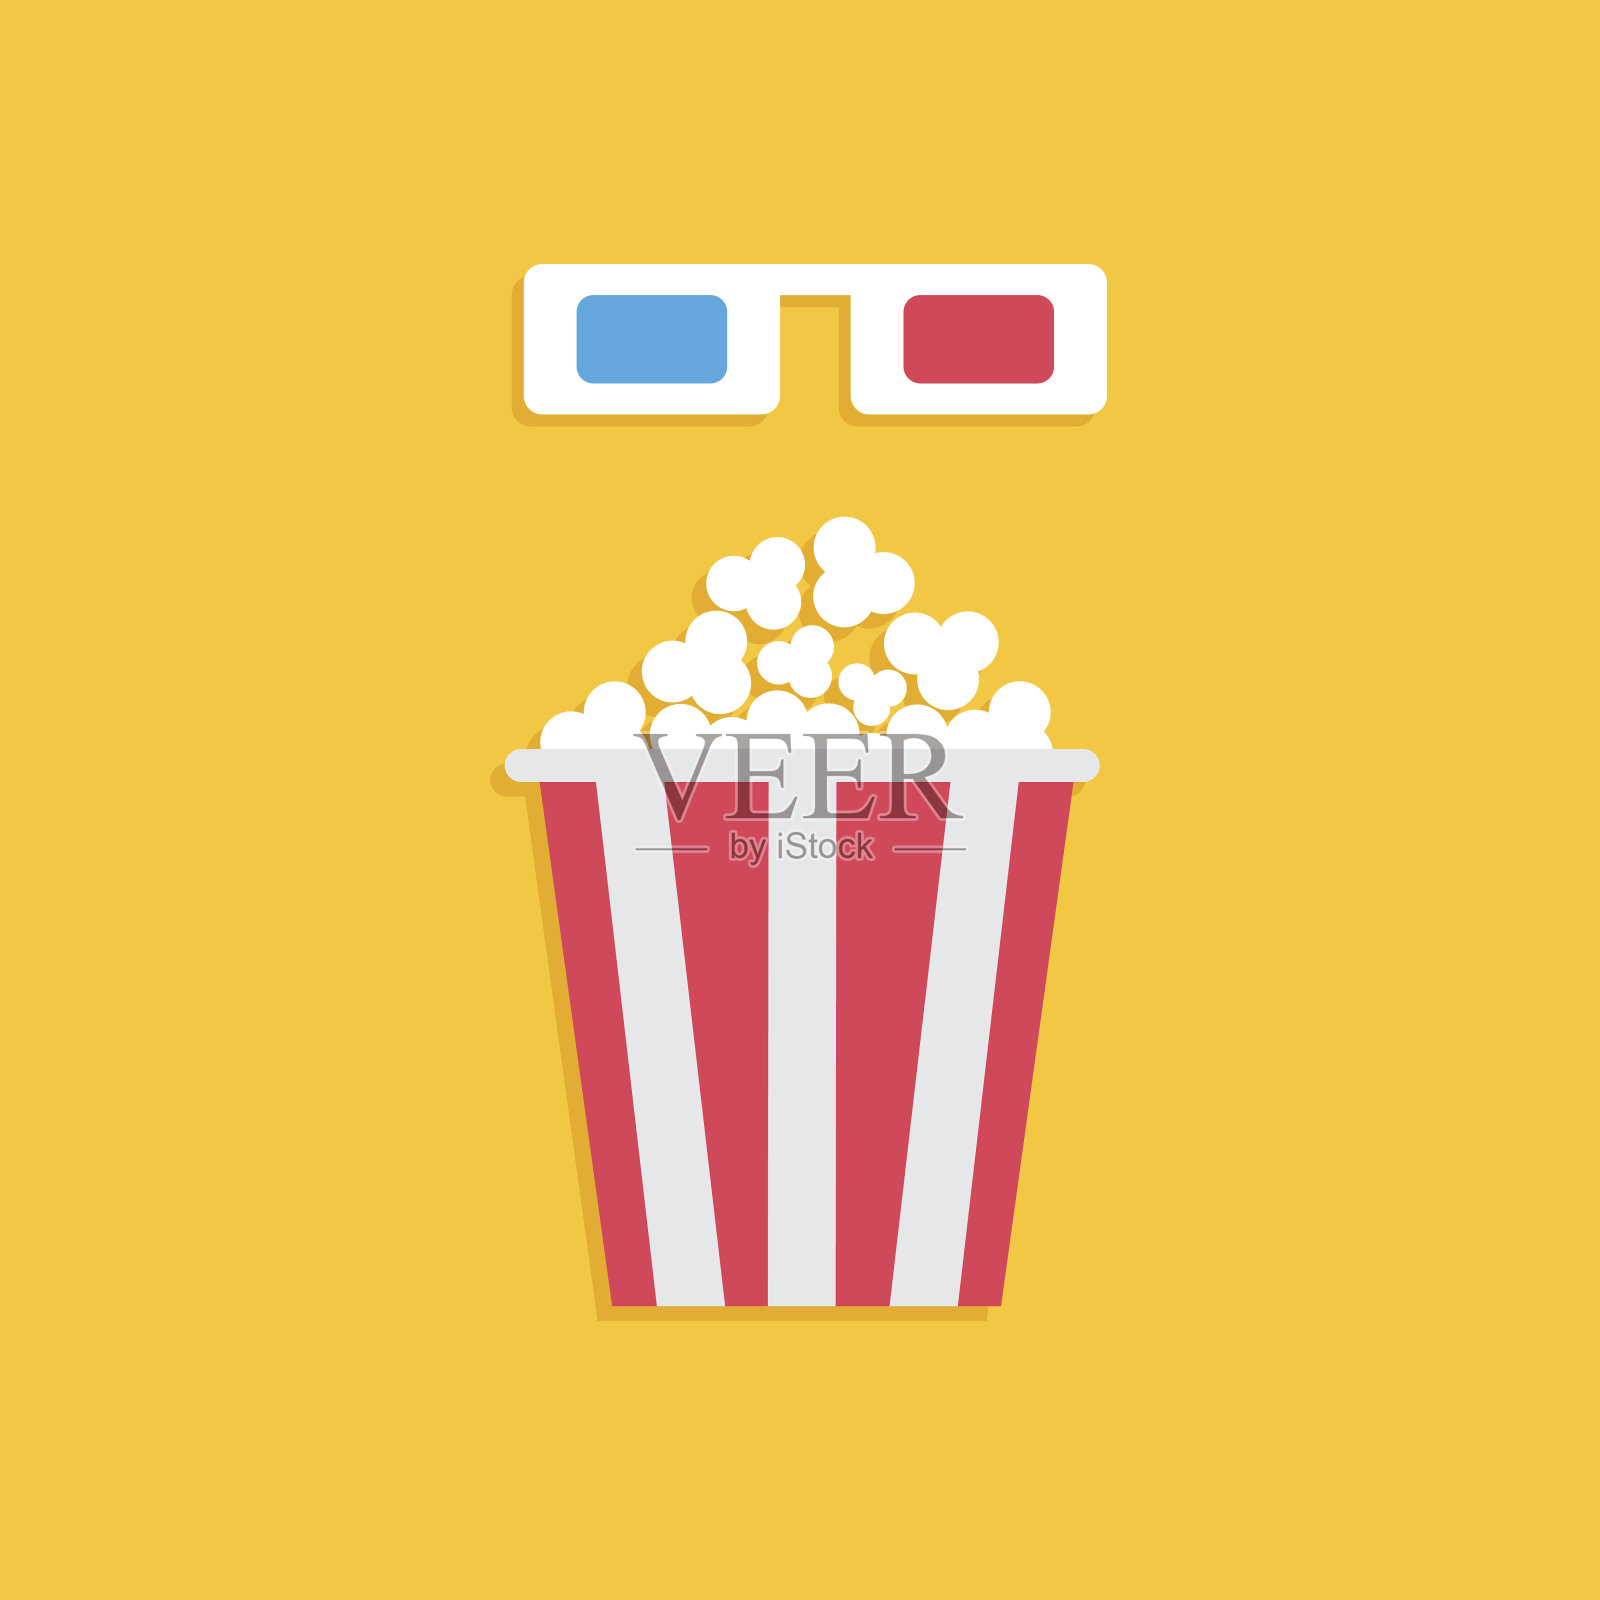 3D纸红蓝眼镜和大爆米花盒。电影电影图标在平面设计风格。黄色背景。插画图片素材